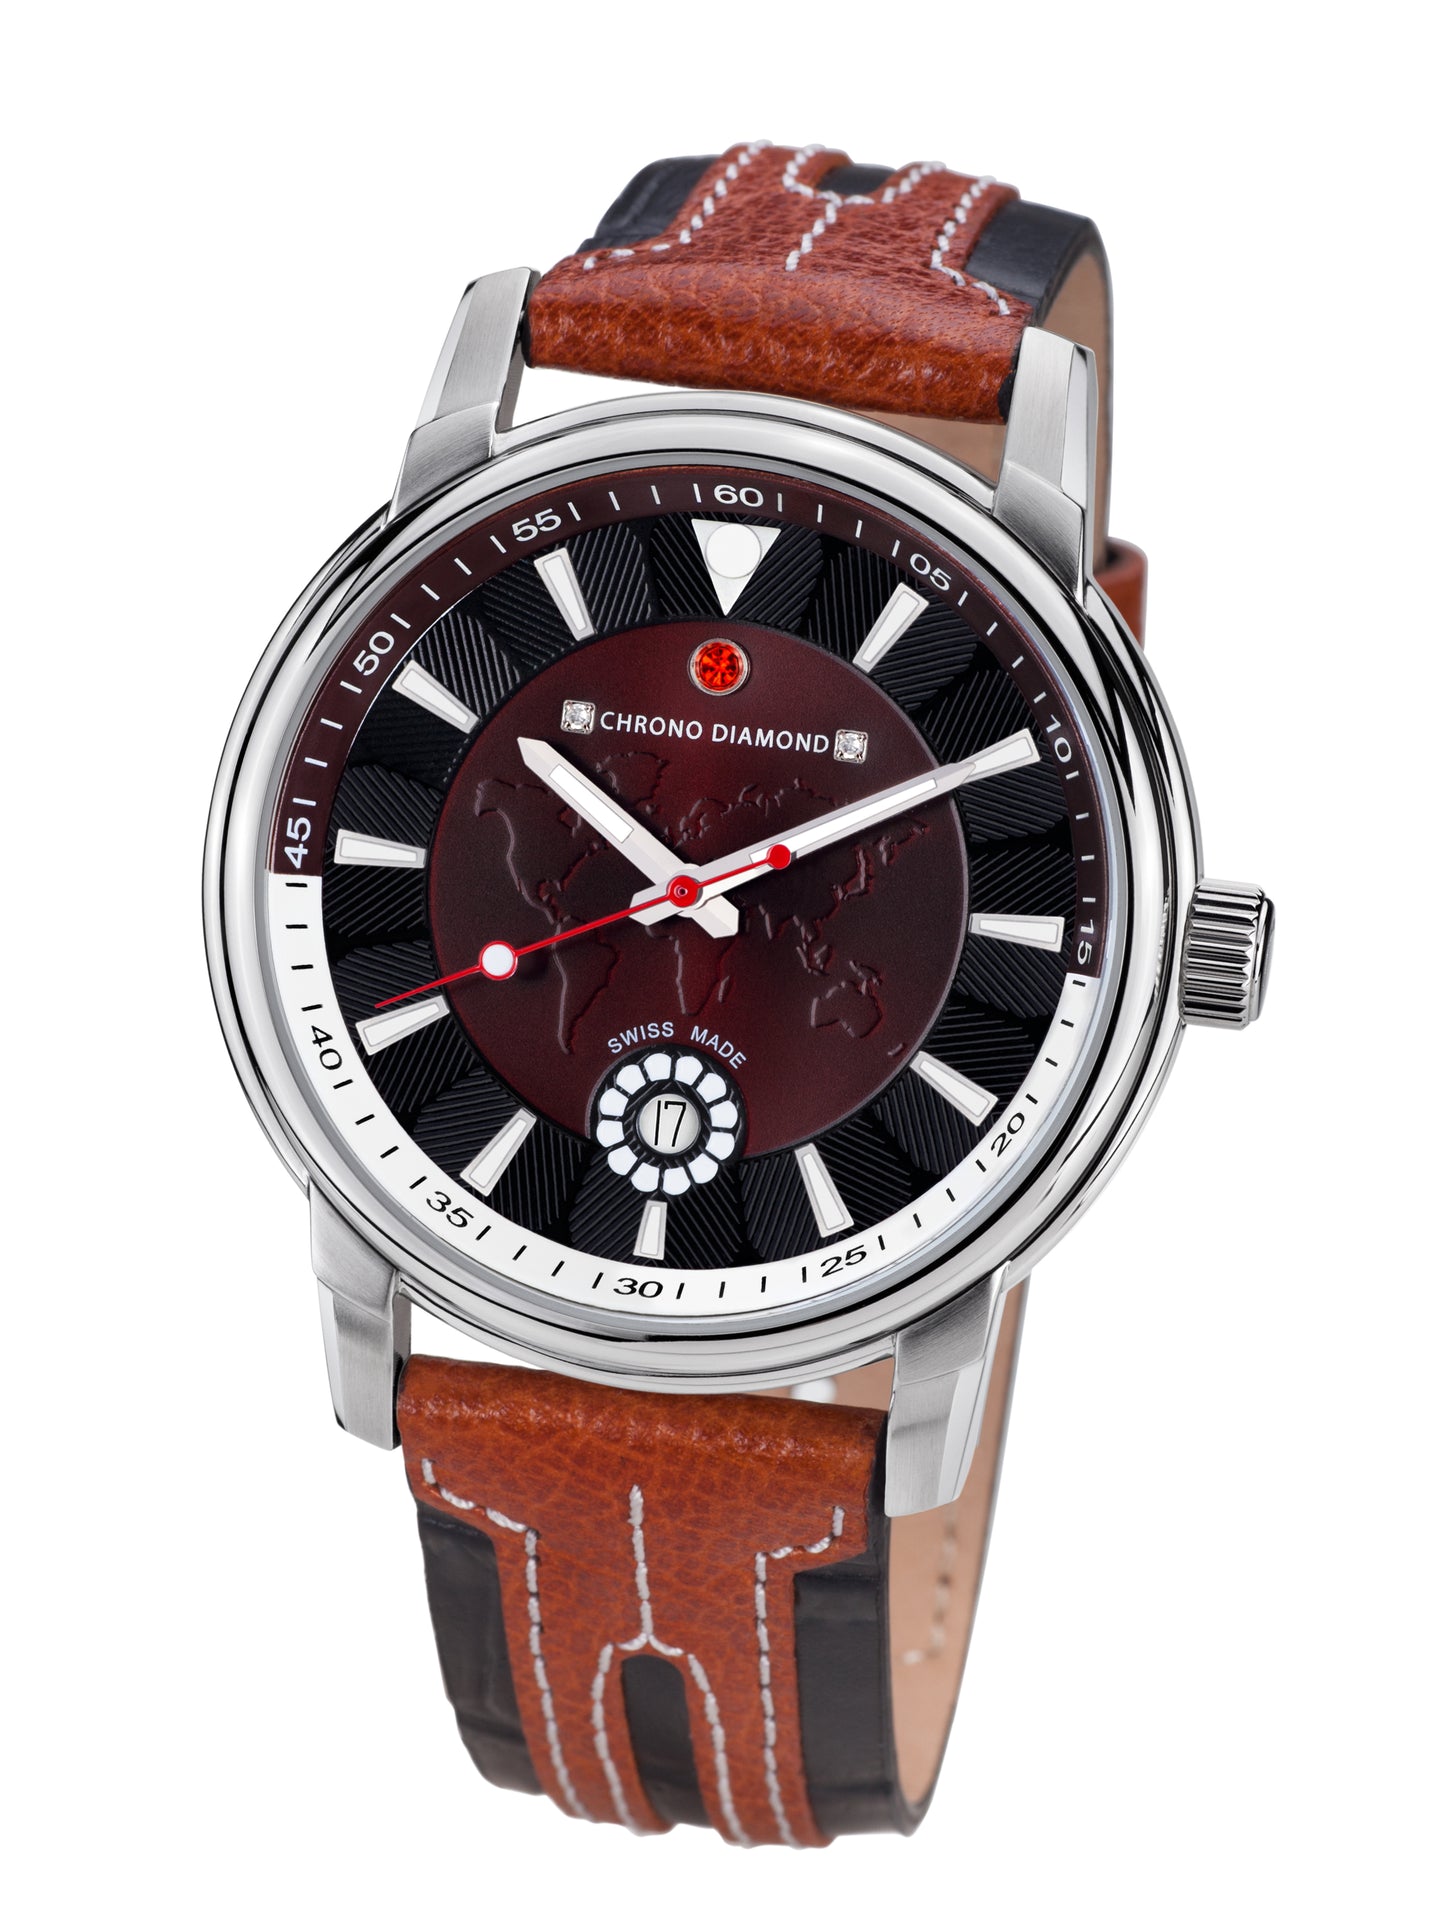 Automatic watches — Nereus — Chrono Diamond — brown